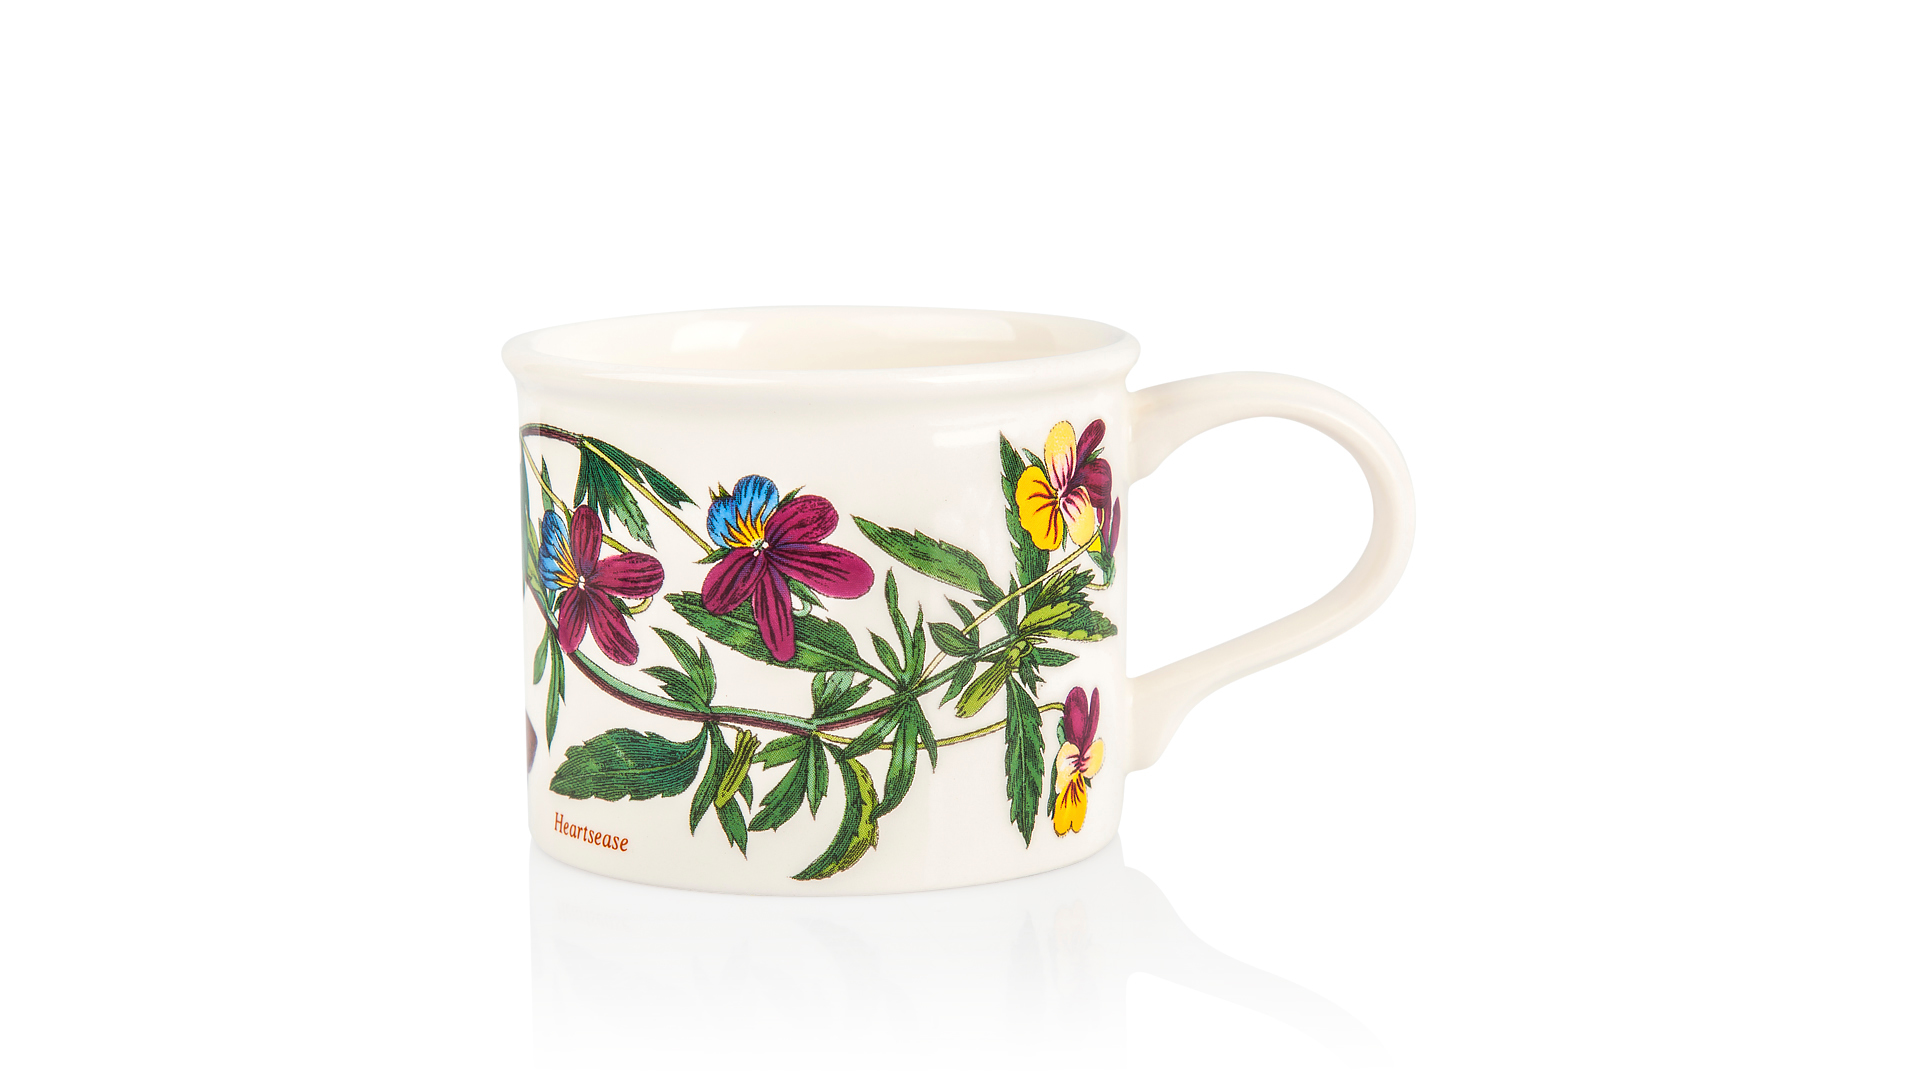 Чашка чайная с блюдцем Portmeirion Ботанический сад.Фиалка трехцветная 200 мл